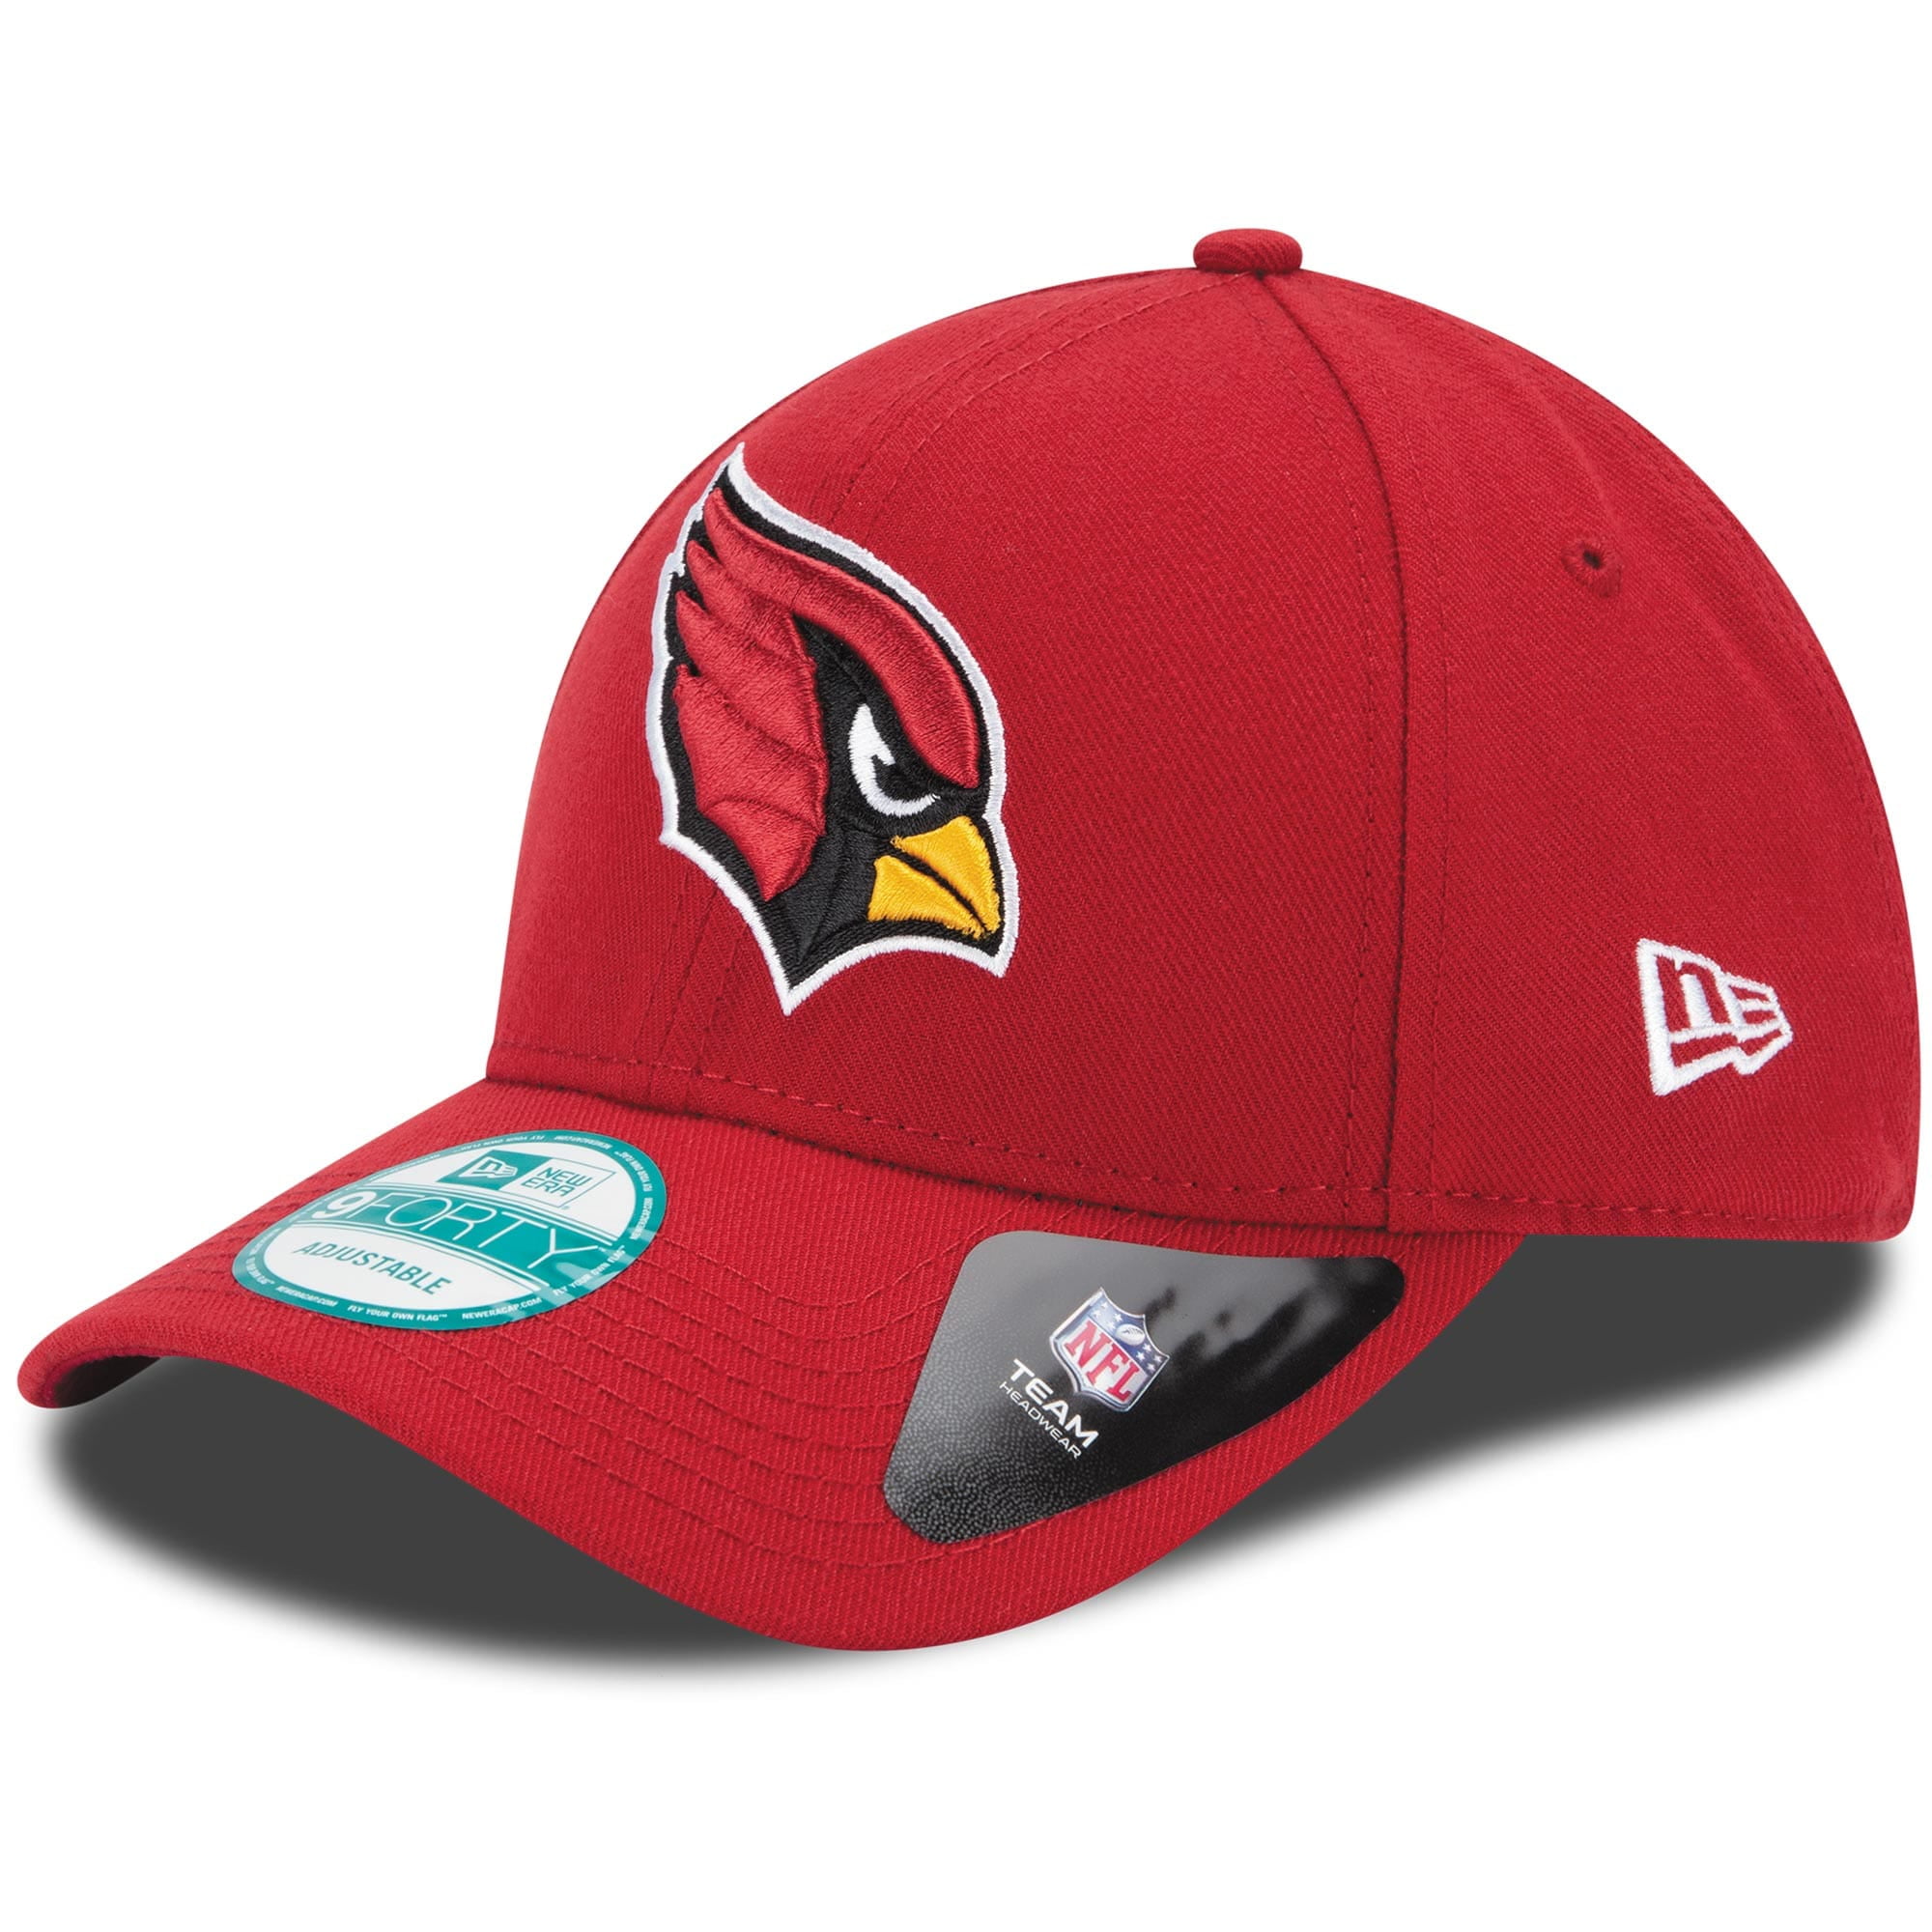 Arizona Cardinals Hats - Walmart.com